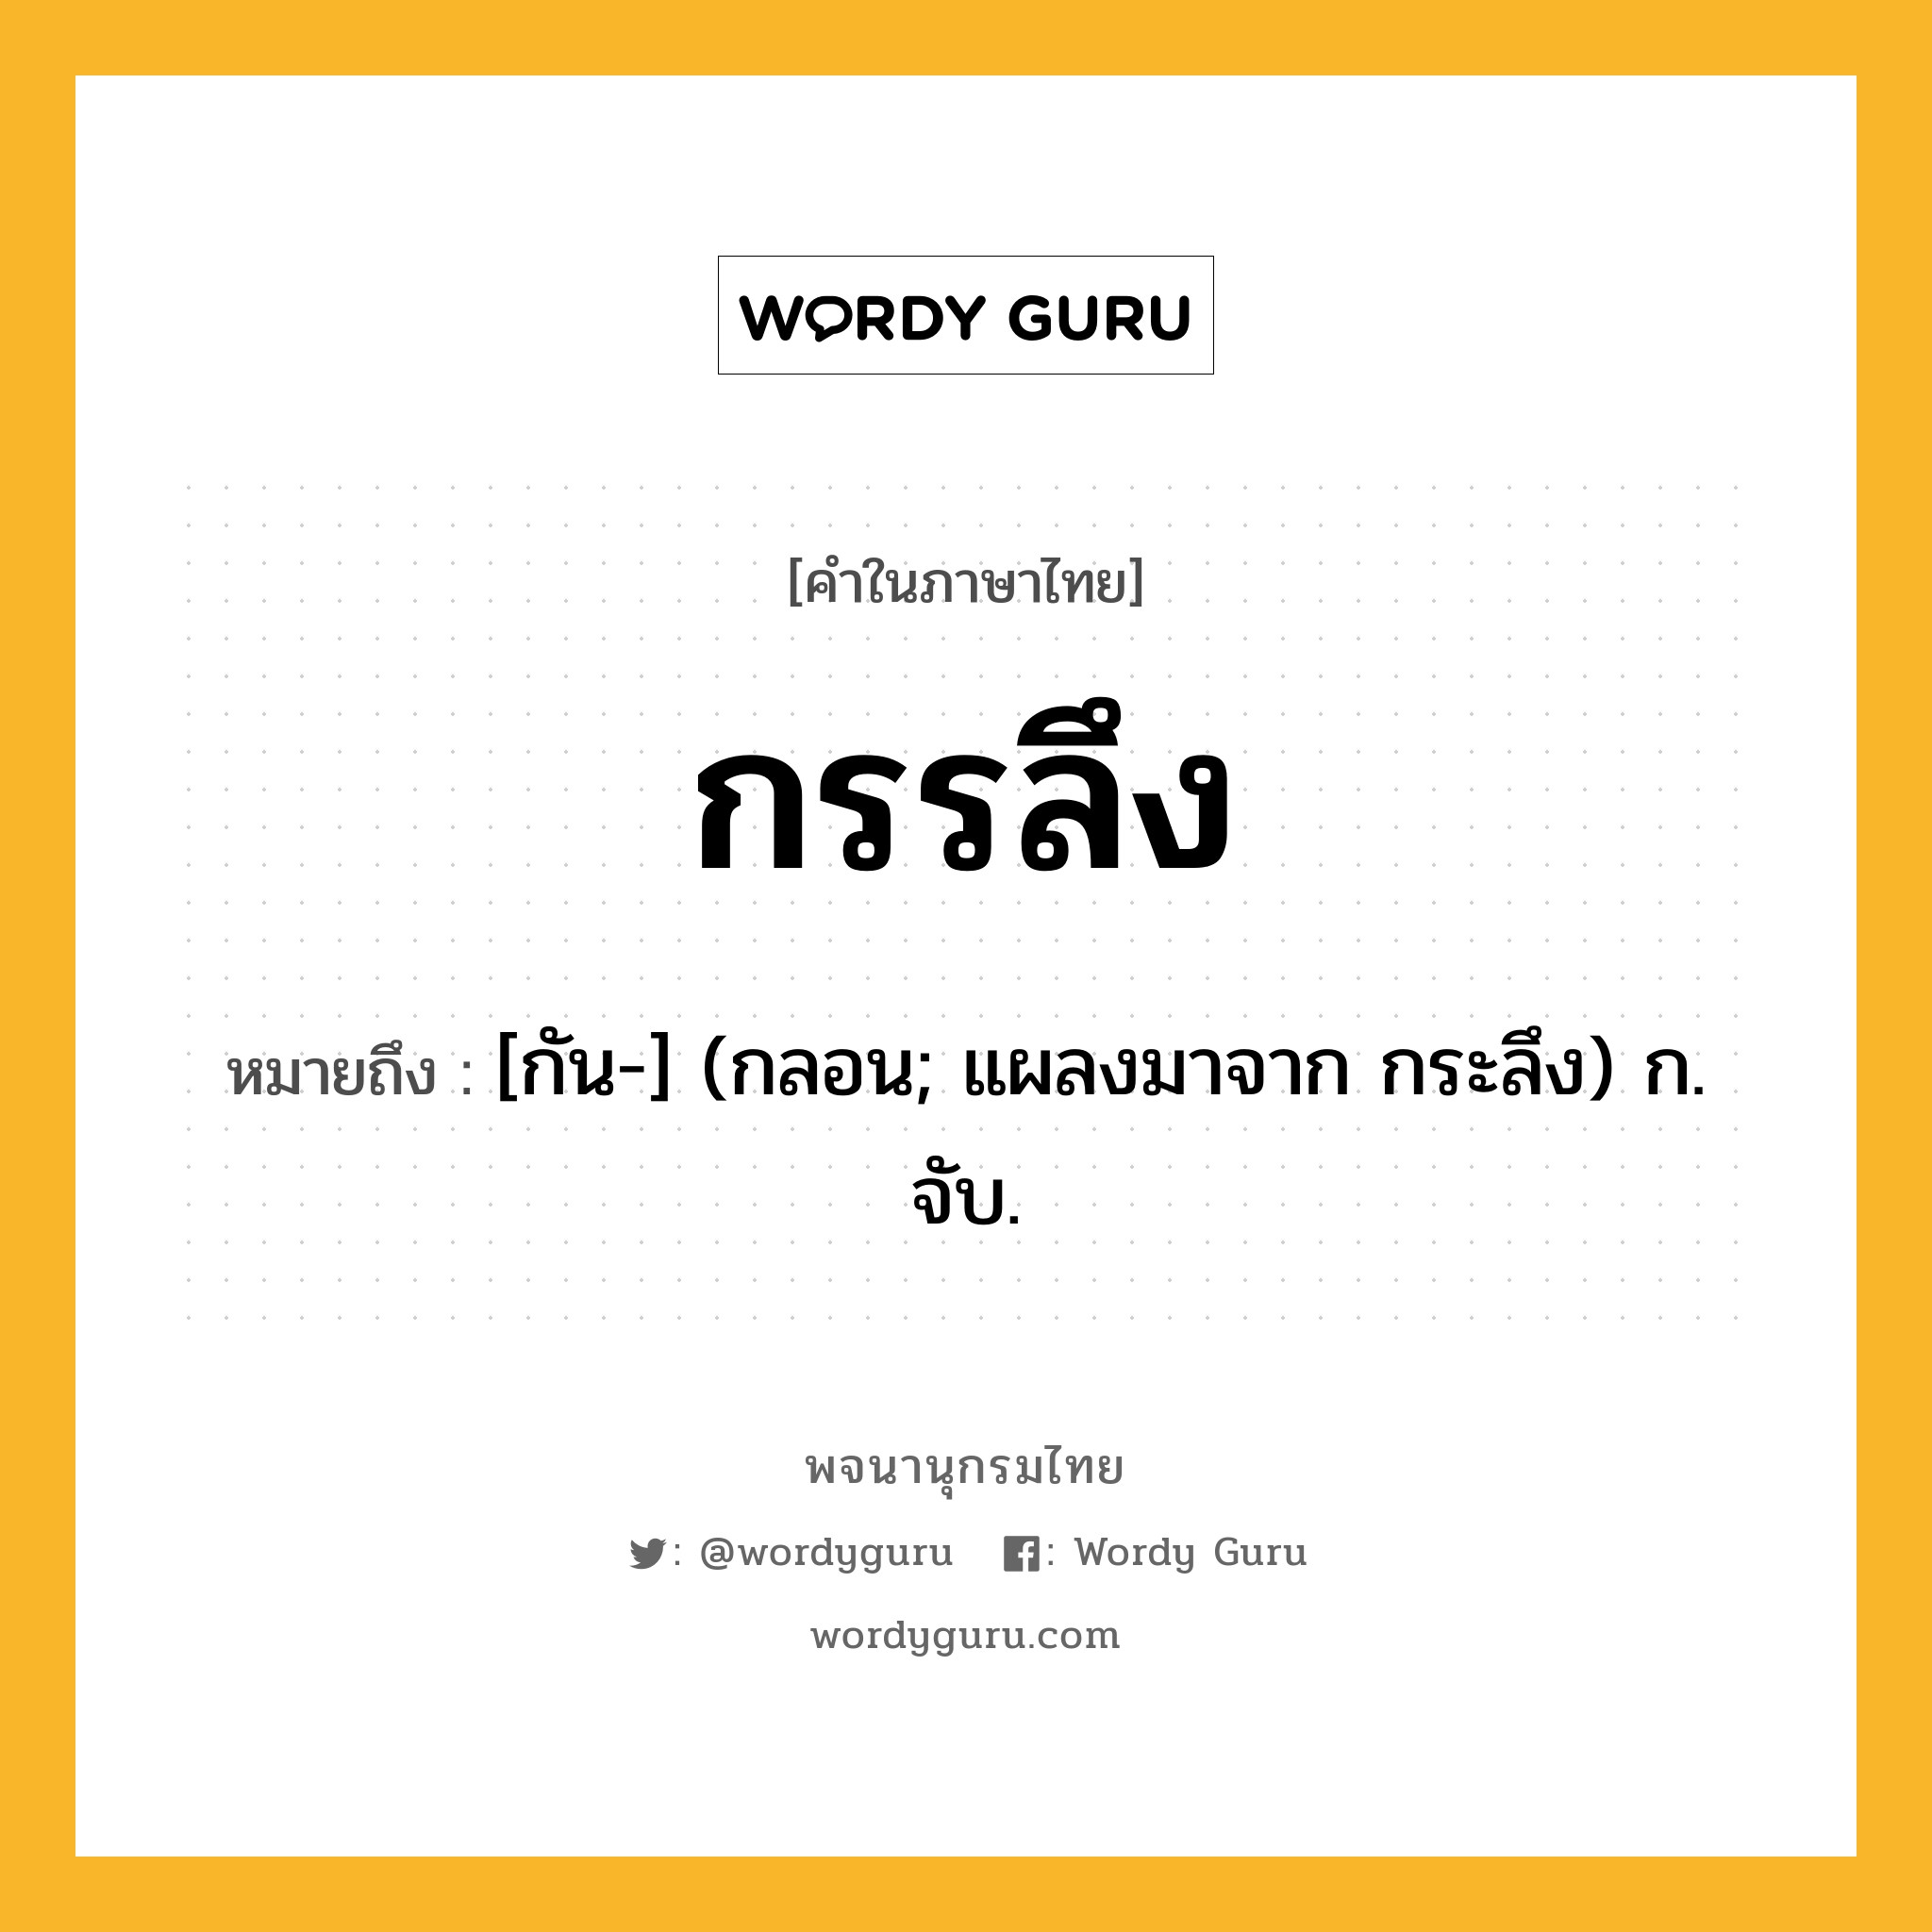 กรรลึง ความหมาย หมายถึงอะไร?, คำในภาษาไทย กรรลึง หมายถึง [กัน-] (กลอน; แผลงมาจาก กระลึง) ก. จับ.